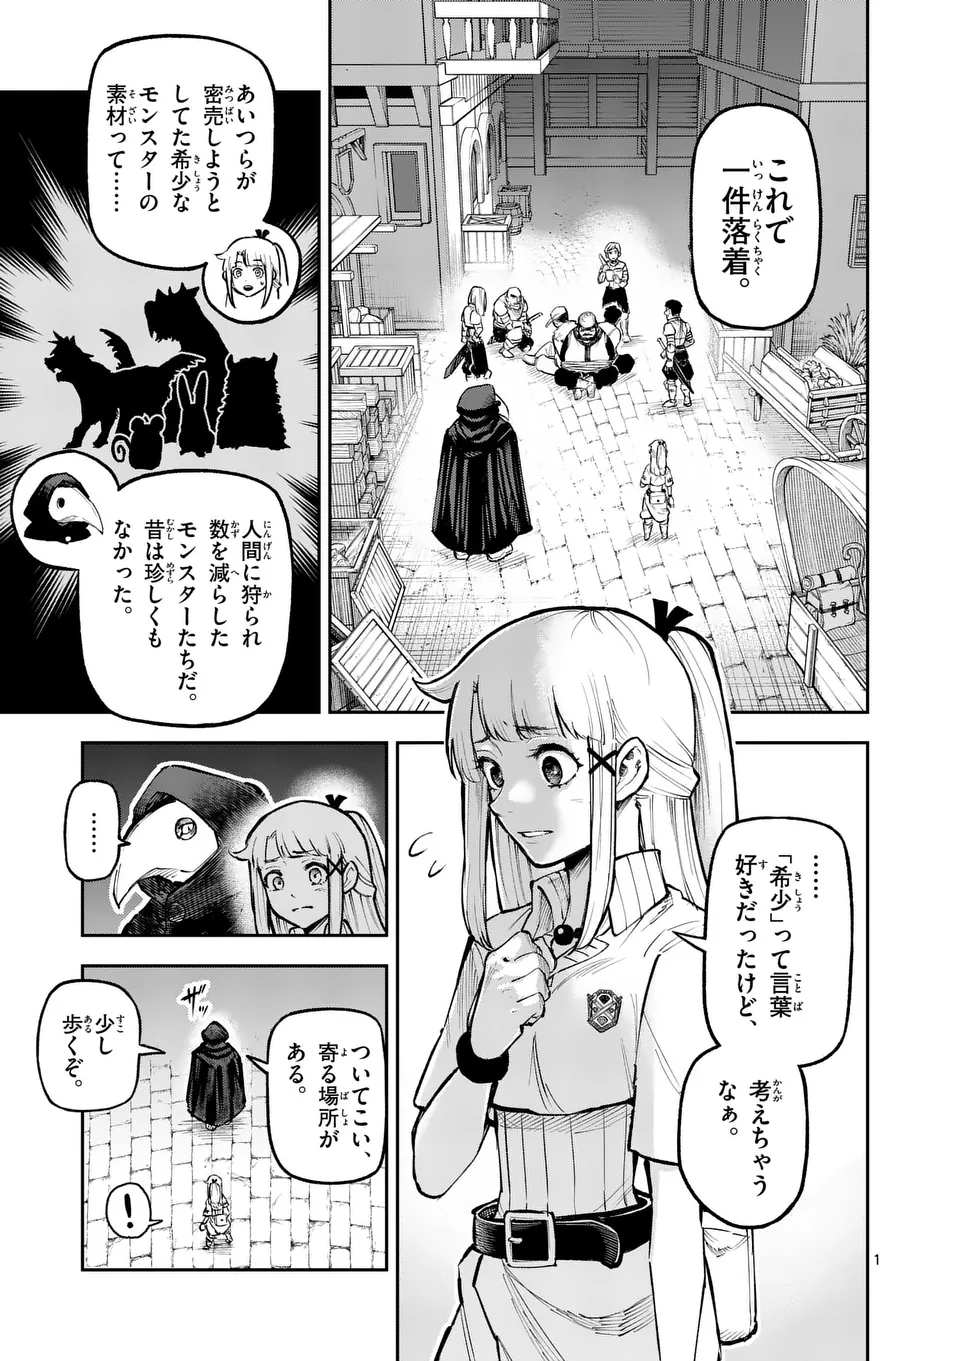 Juuou to Yakusou - Chapter 17 - Page 1